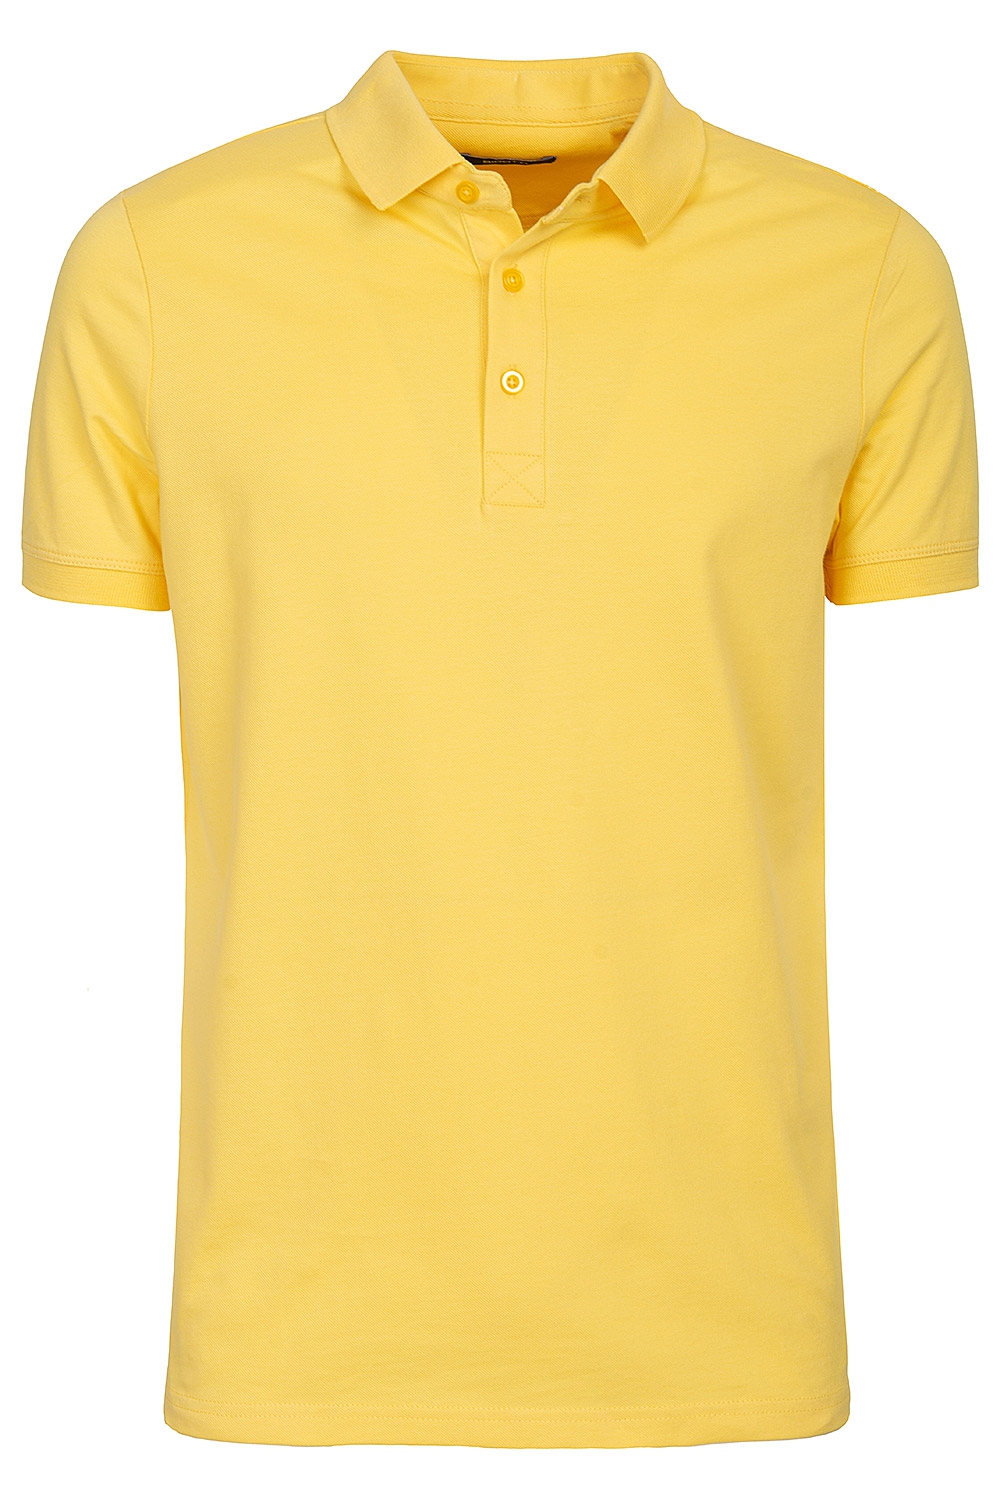 Yellow t-shirt 0